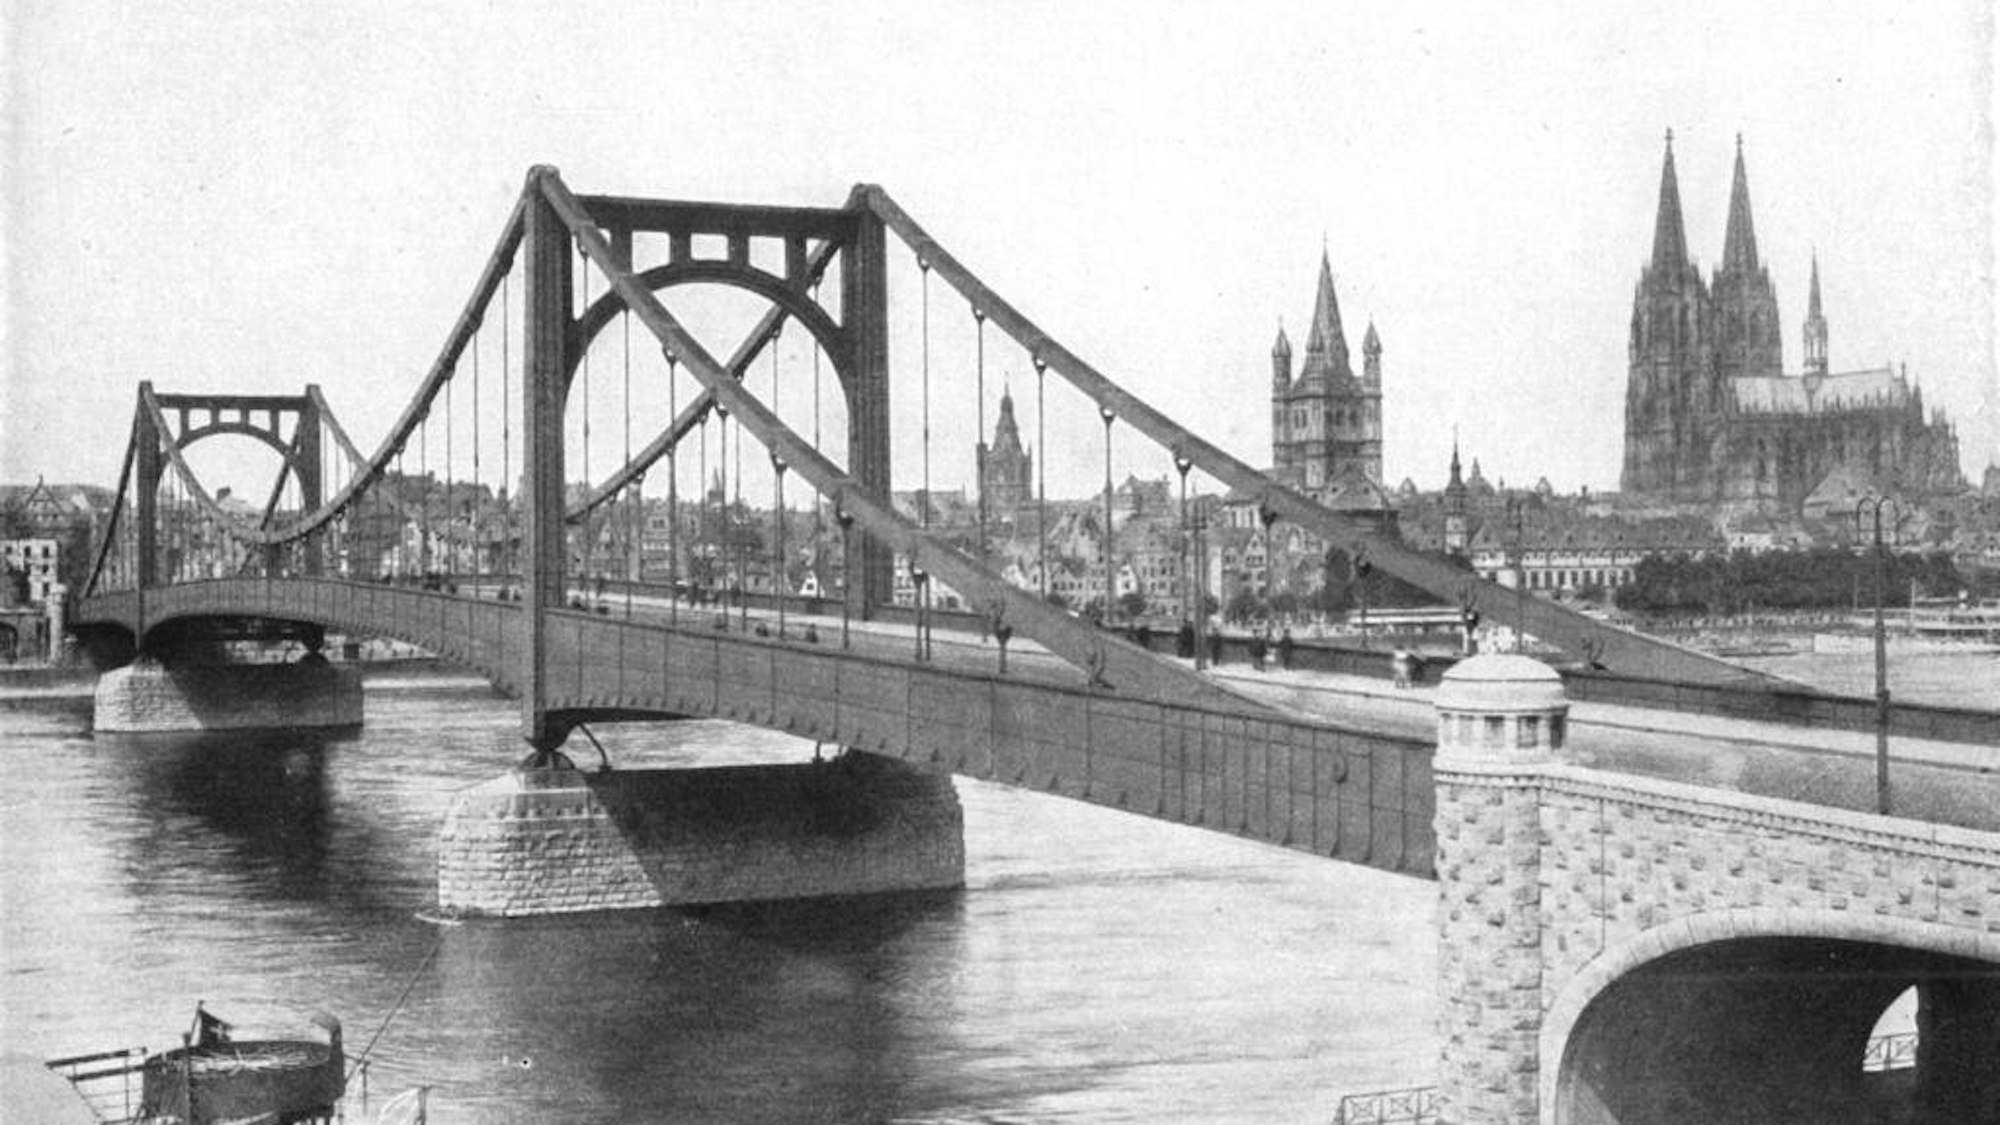 Die alte Deutzer Brücke, später benannt nach dem Reichspräsidenten Paul von Hindenburg, wurde 1915 eröffnet.